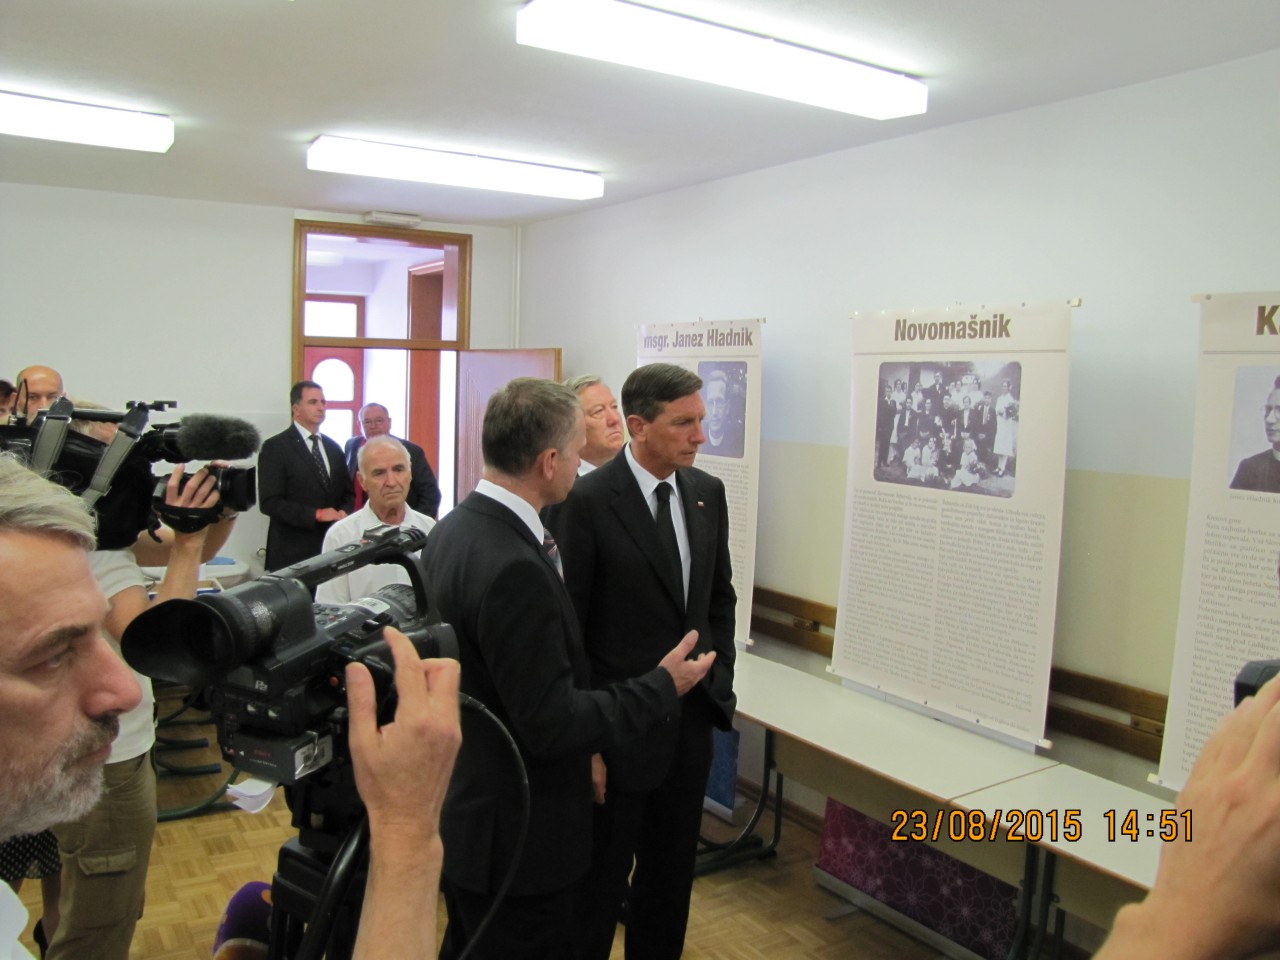 Rovte ob evropskem dnevu totalitarnih in avtoritarnih režimov 23. avgust 2015, Jože Leskovec razloži Borutu Pahor o delu in poslanstvu msgr. Janeza Hladnik